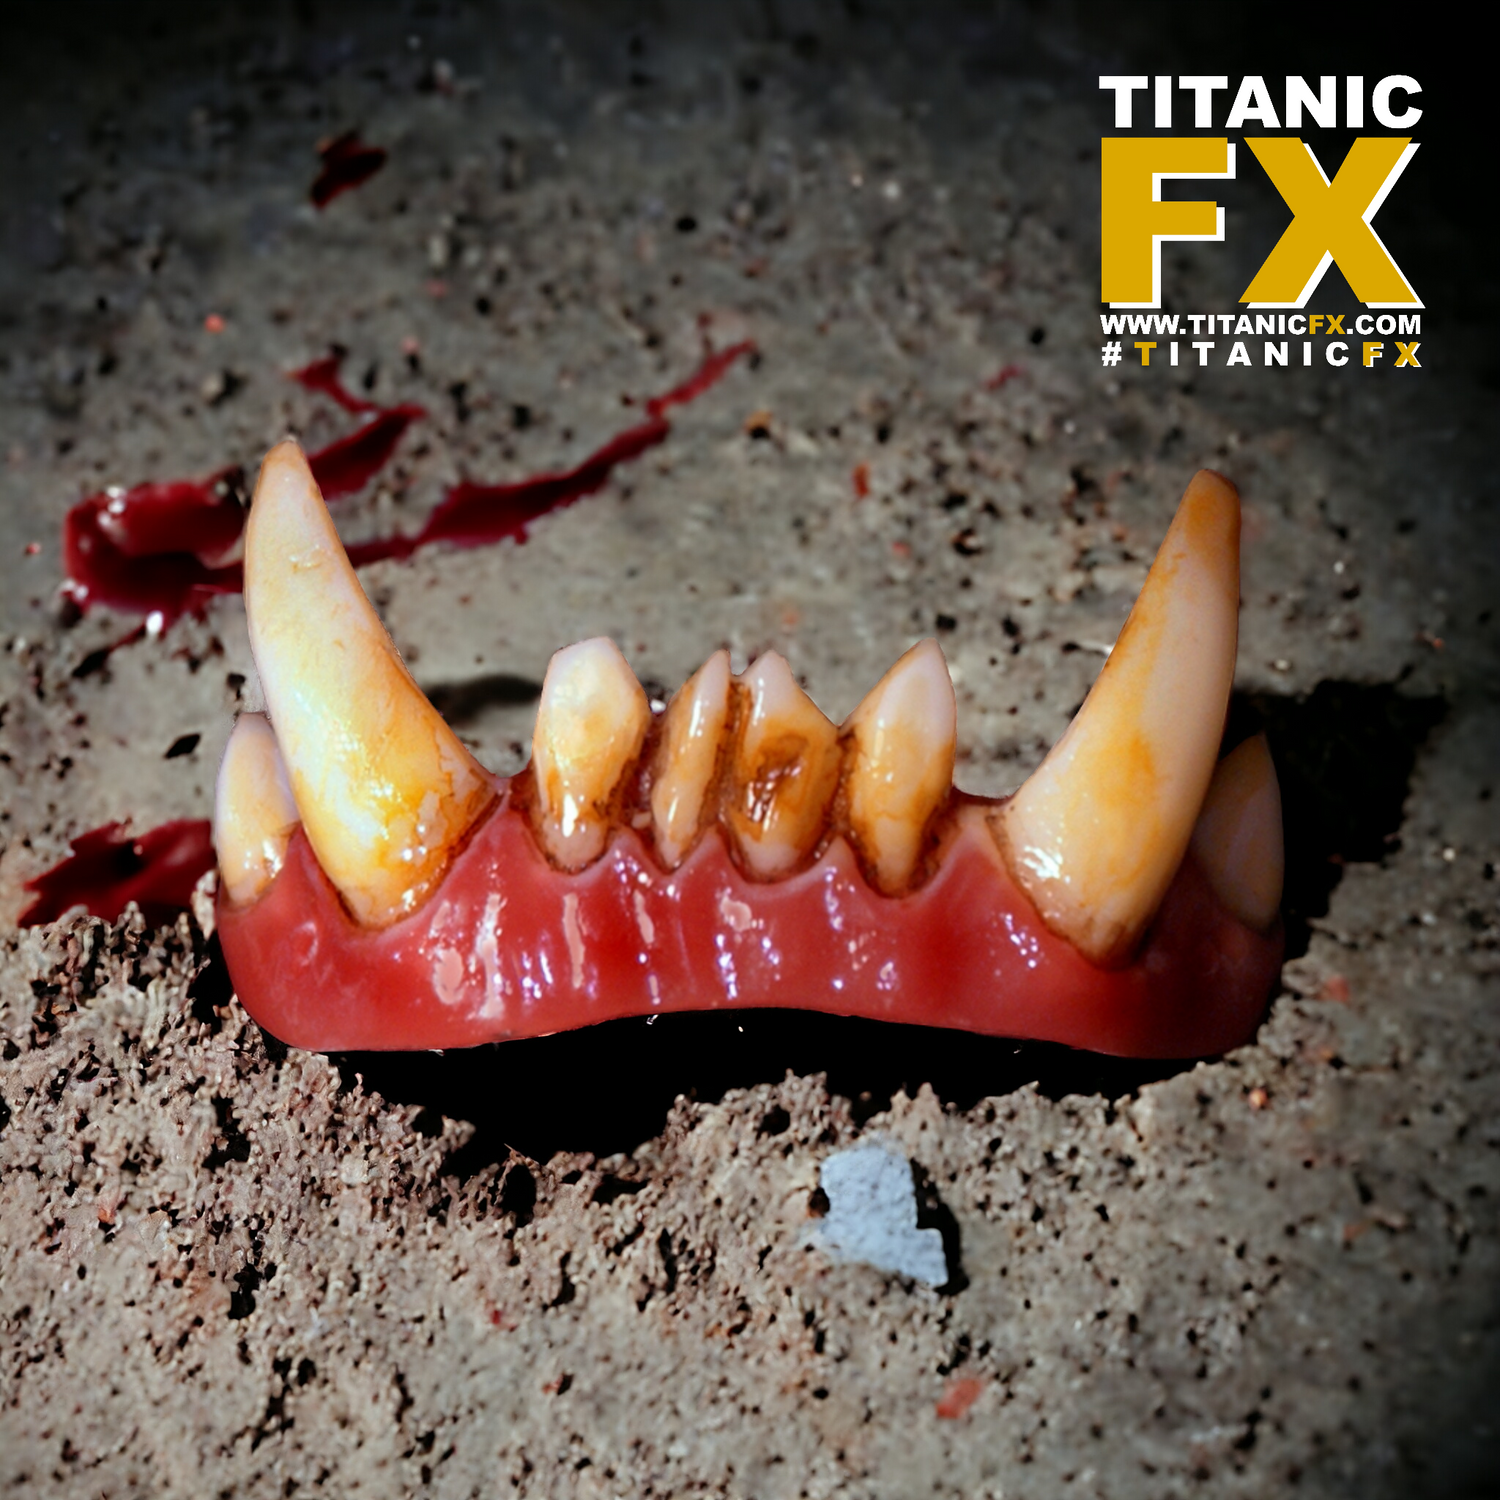 Dental Distortions | 'Troll' FX Fangs